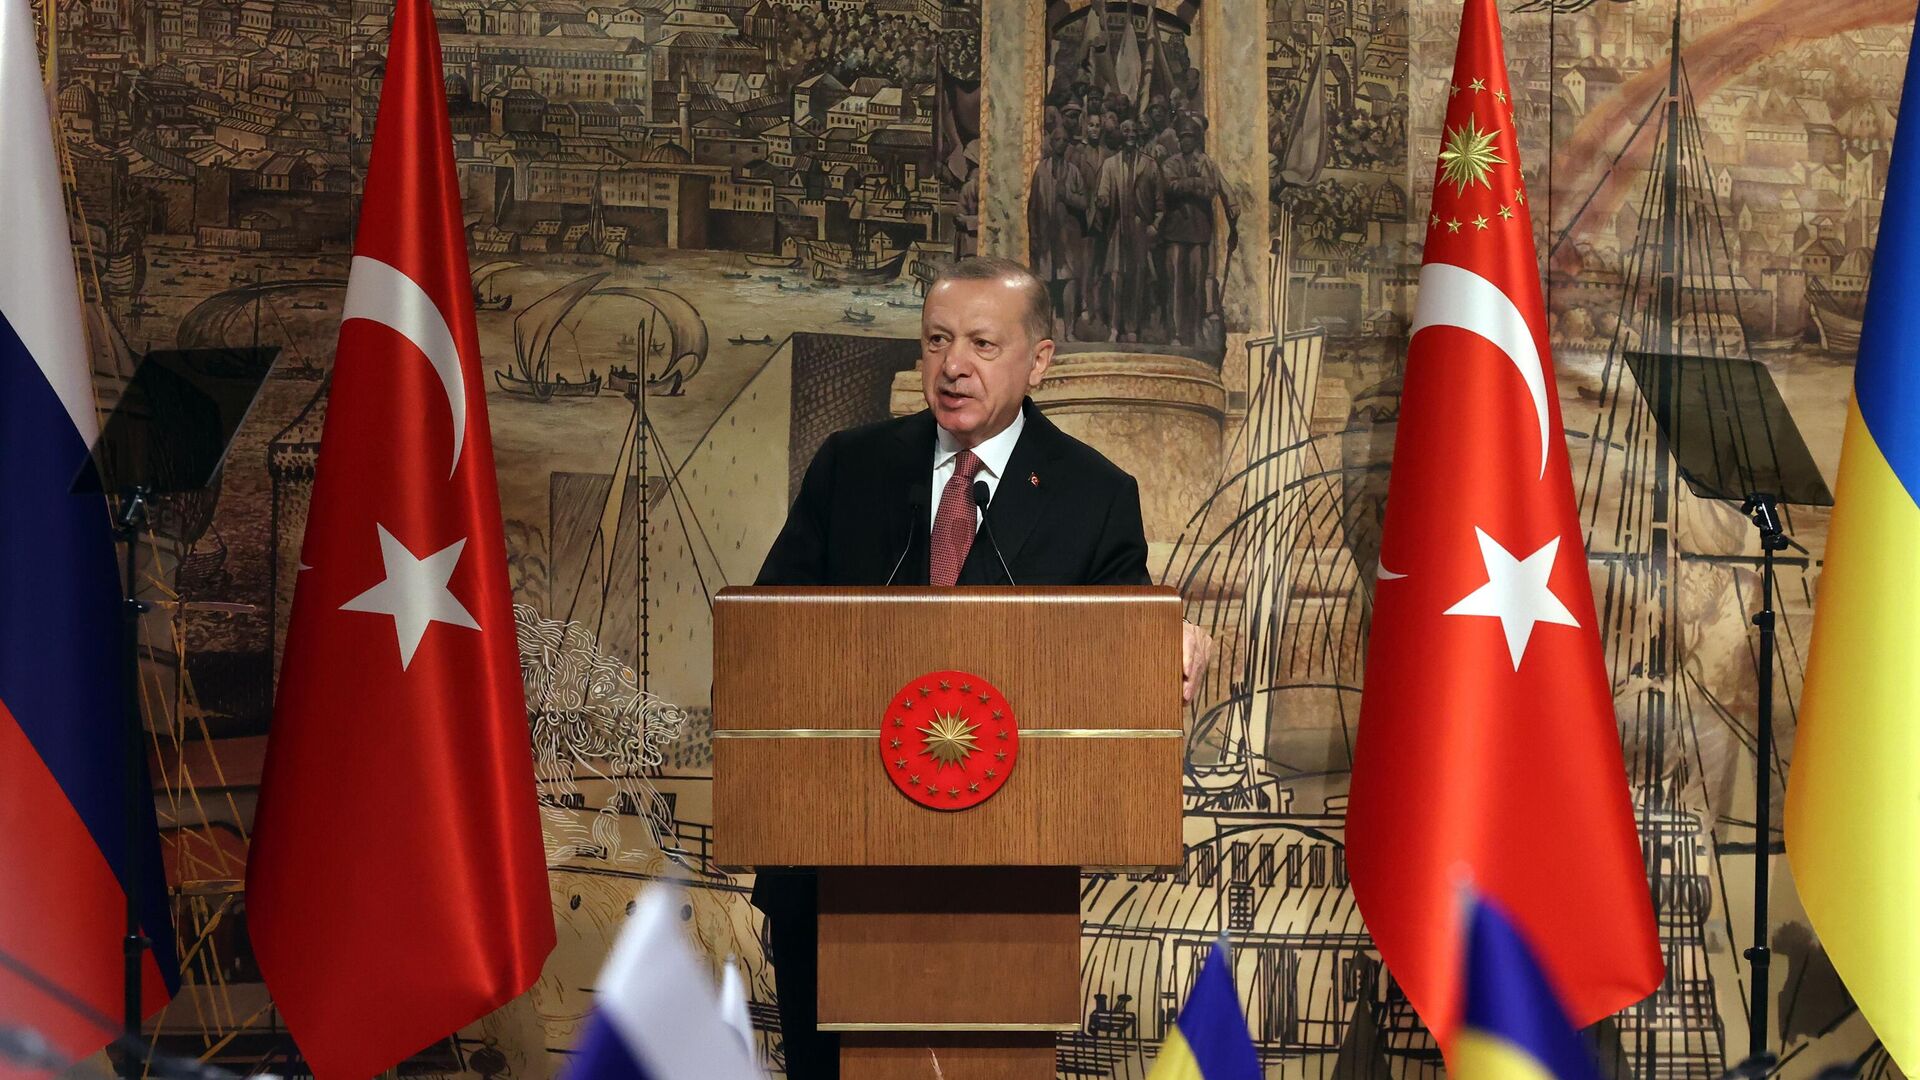 Президент Турции Реджеп Тайип Эрдоган выступает на российско-украинских переговорах во дворце Долмабахче в Стамбуле. 29 марта 2022 - РИА Новости, 1920, 29.03.2022